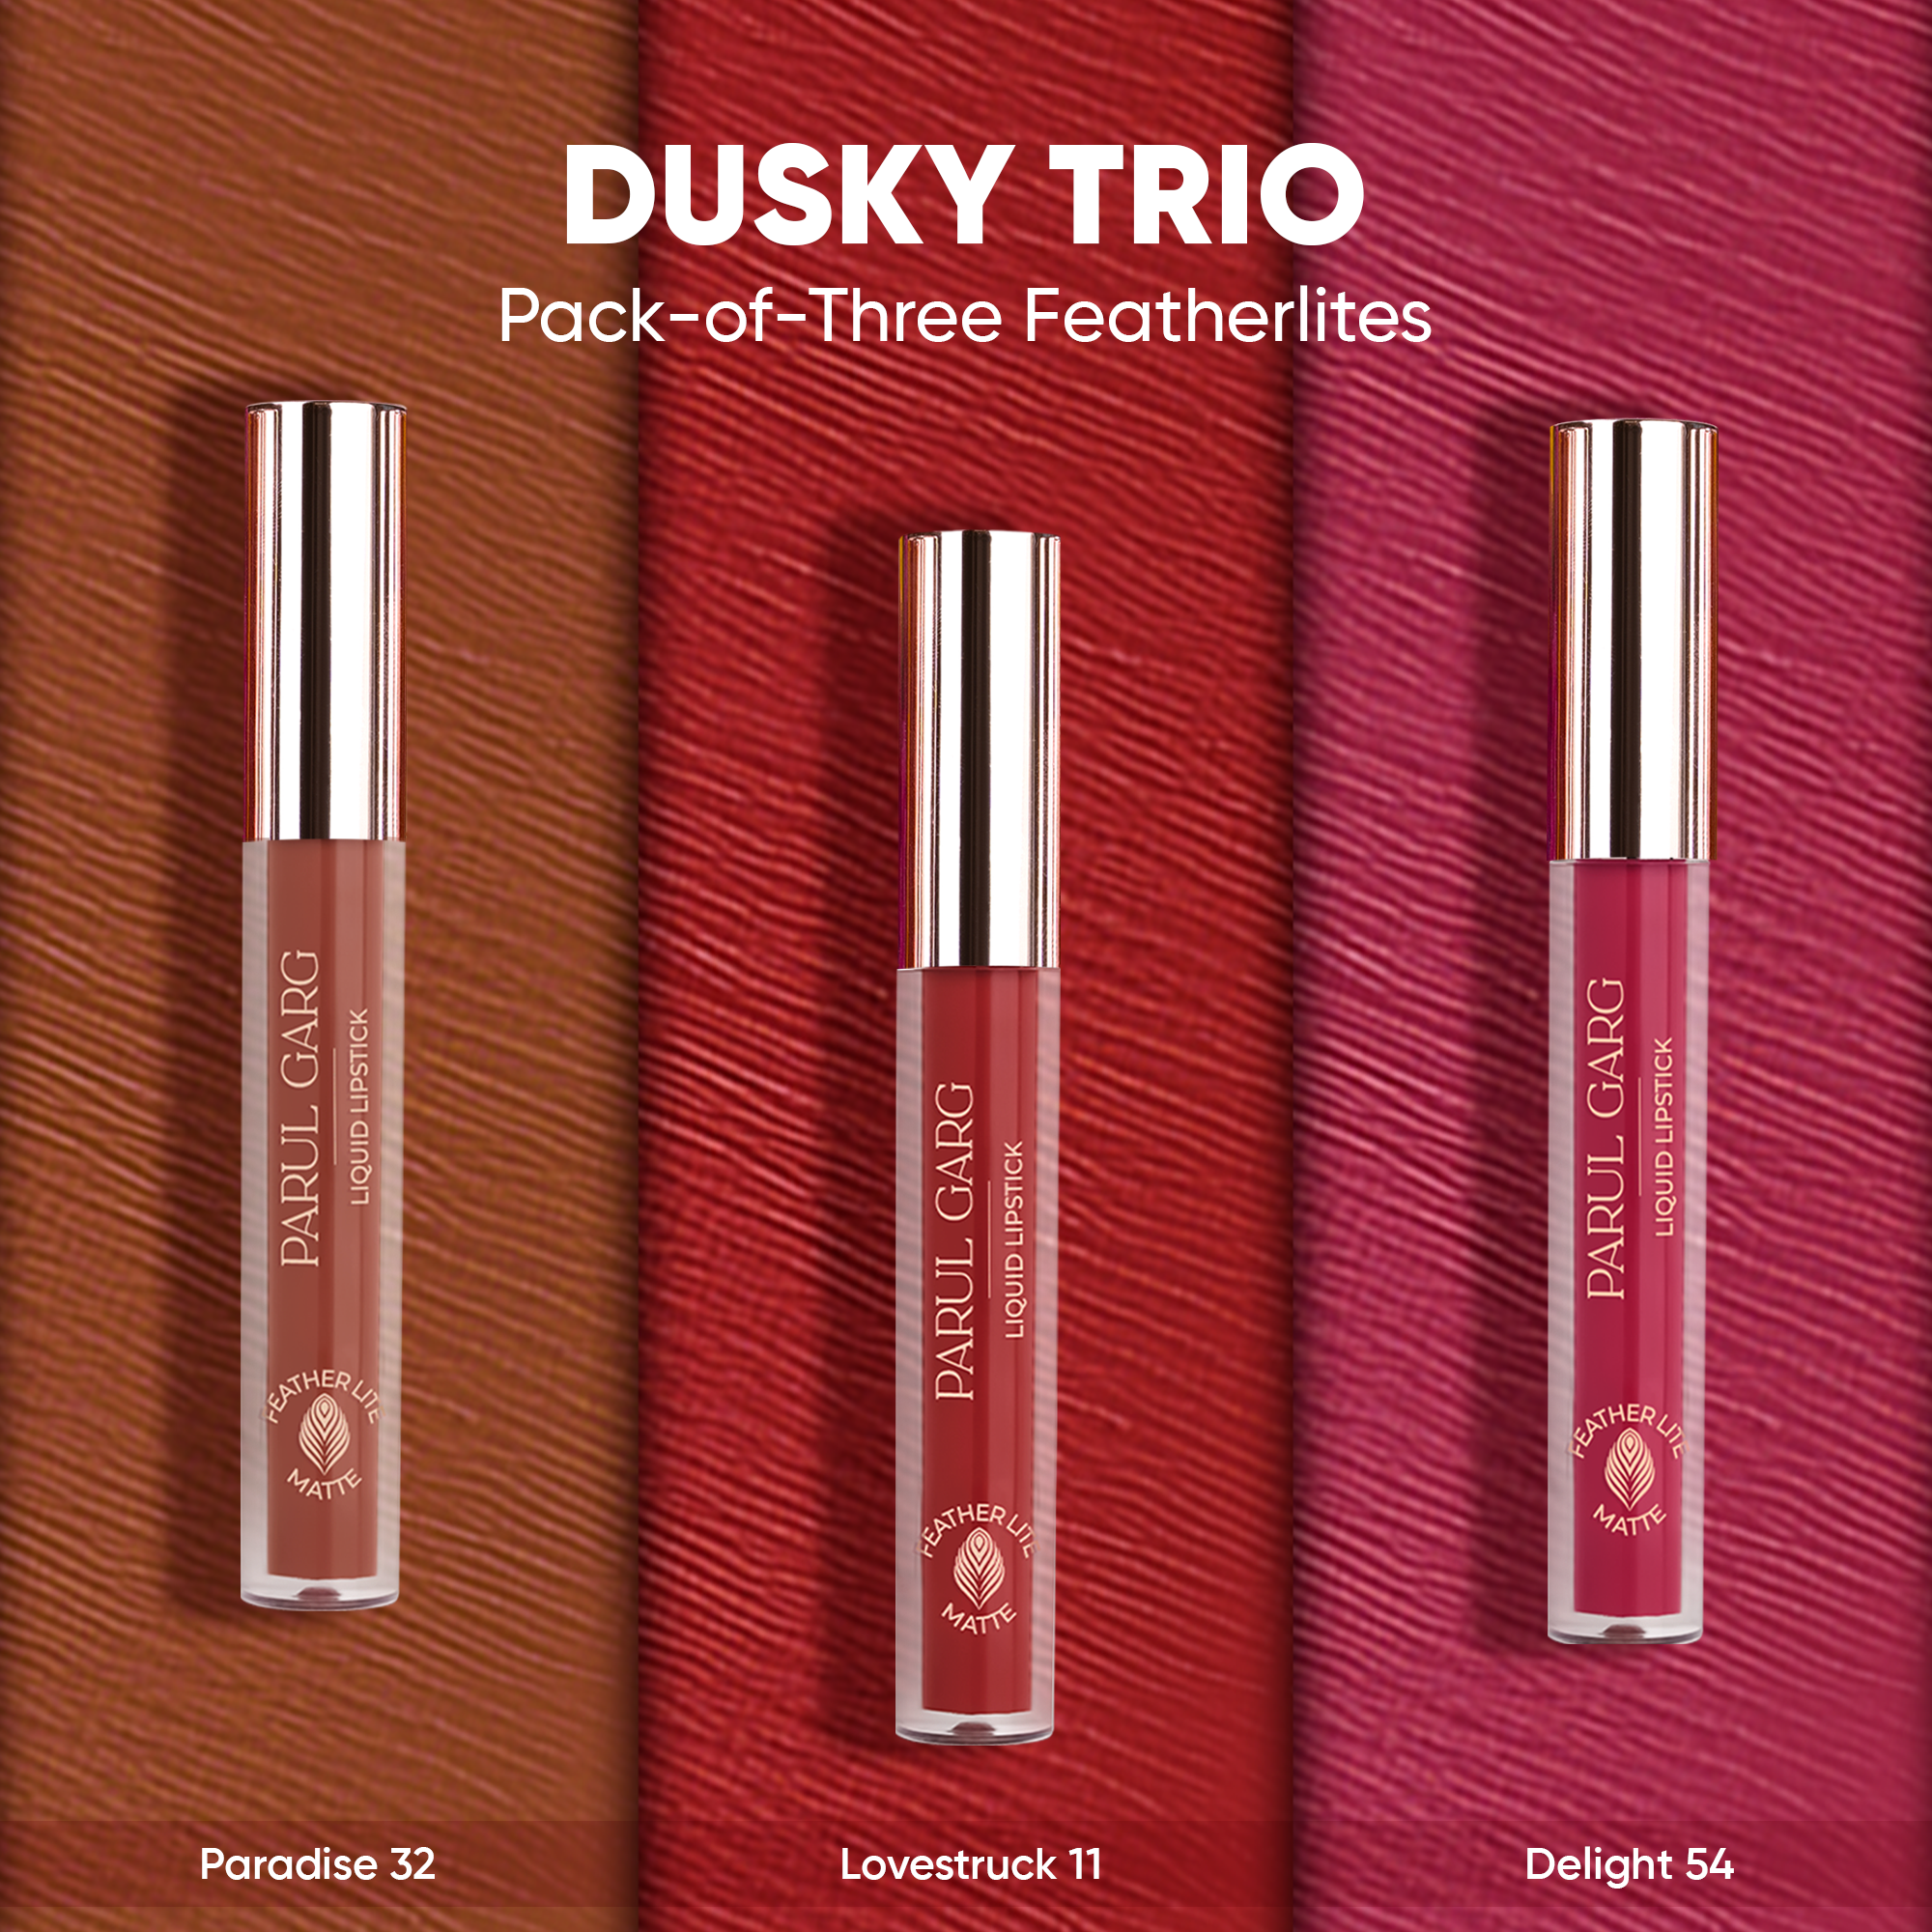 Dusky Trio: Pack-of-Three Featherlites Liquid Lipsticks